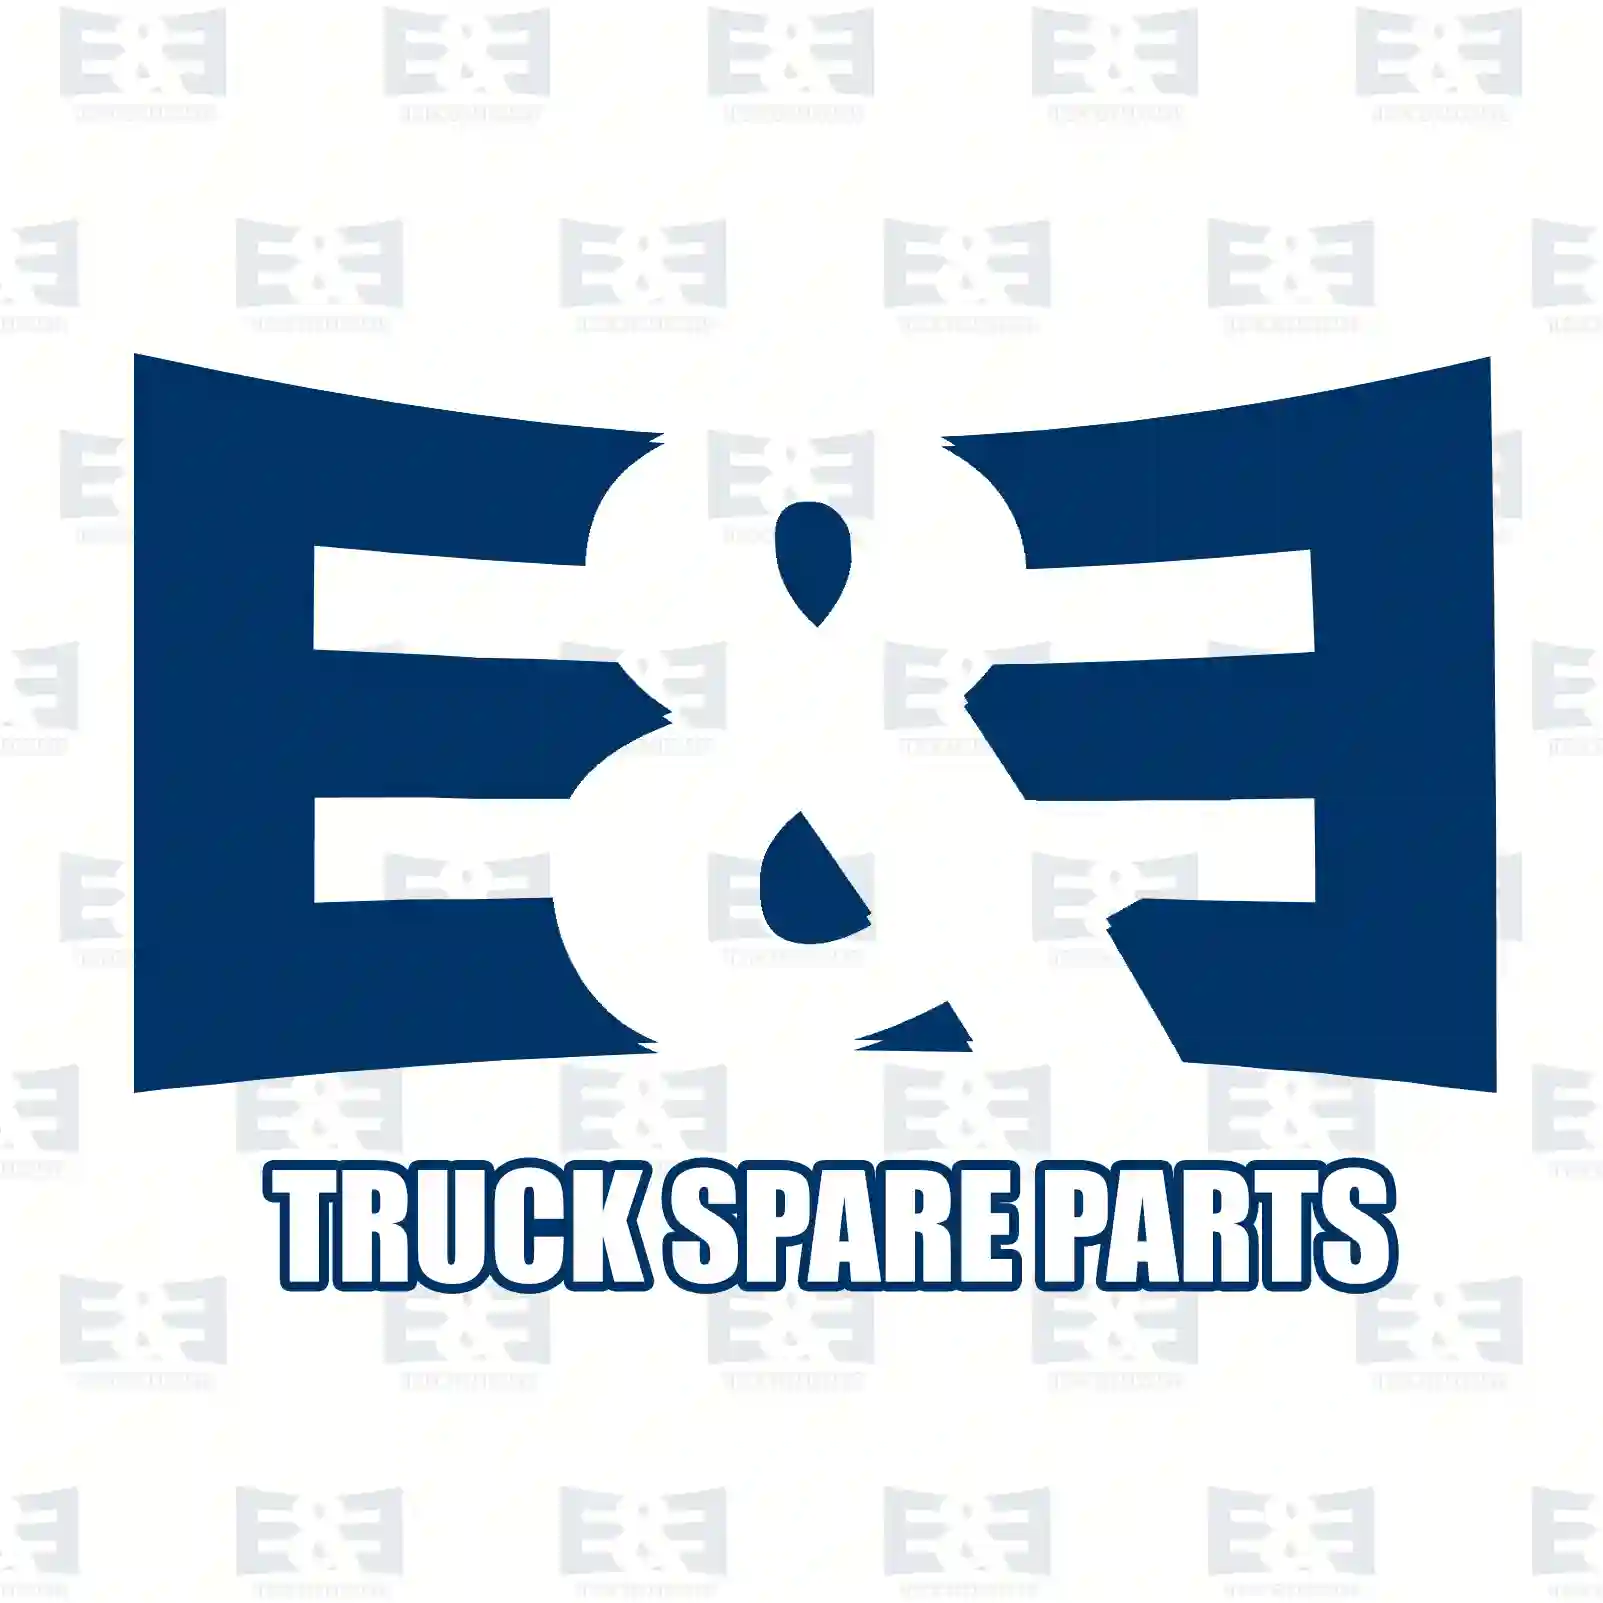 Wiper blade set, 2E2293151, 81264400029, 81264400032, 81264400043, 81264406006, 81264406021, 81707010331, 84264400003, 0018204845, 0018206945, 5001821427, 5001865596, 5001865597, 1849340, ZG21309-0008 ||  2E2293151 E&E Truck Spare Parts | Truck Spare Parts, Auotomotive Spare Parts Wiper blade set, 2E2293151, 81264400029, 81264400032, 81264400043, 81264406006, 81264406021, 81707010331, 84264400003, 0018204845, 0018206945, 5001821427, 5001865596, 5001865597, 1849340, ZG21309-0008 ||  2E2293151 E&E Truck Spare Parts | Truck Spare Parts, Auotomotive Spare Parts